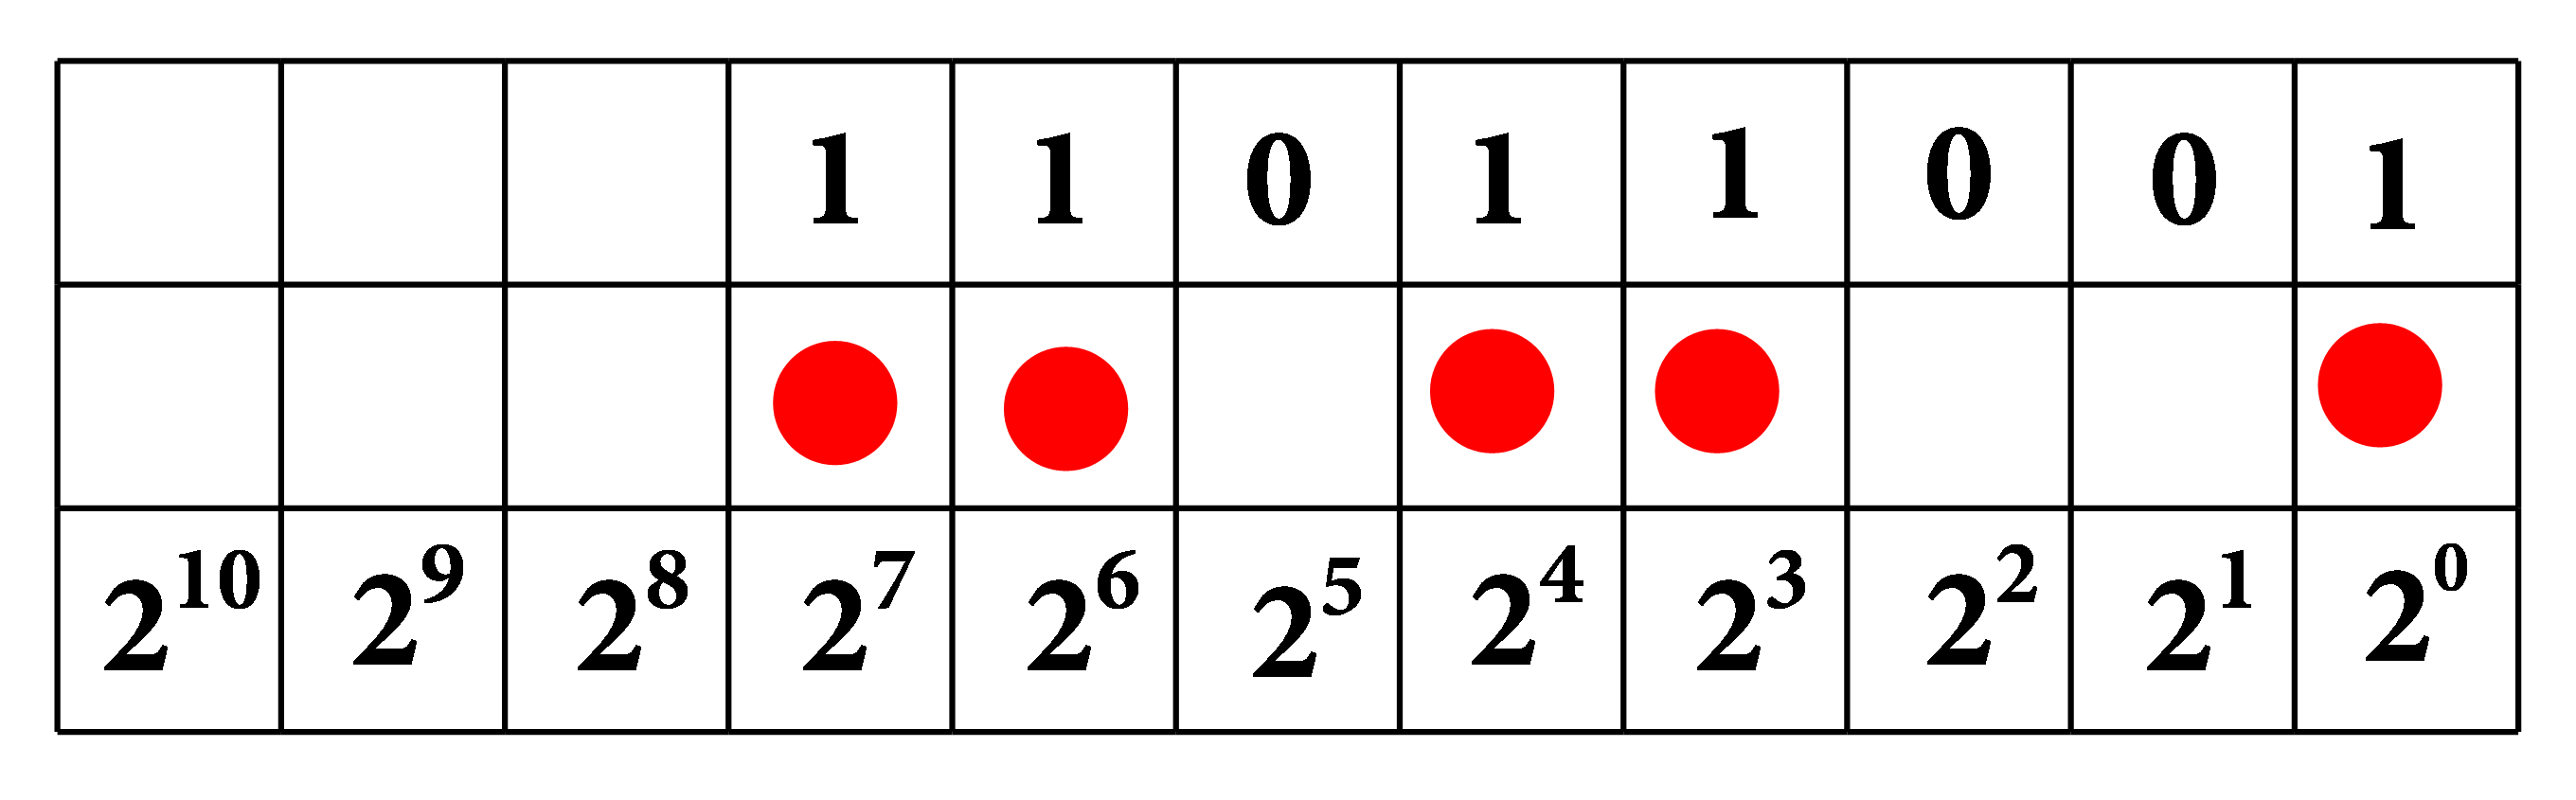 U tablici je prikazan binarni prikaz broja 217 u zapisu 11011001. Broj je prikazan i grafički, crvenim krugovima u prvom, četvrtom, petom, sedmom i  osmom mjestu tablice (gledano zdesna ulijevo).